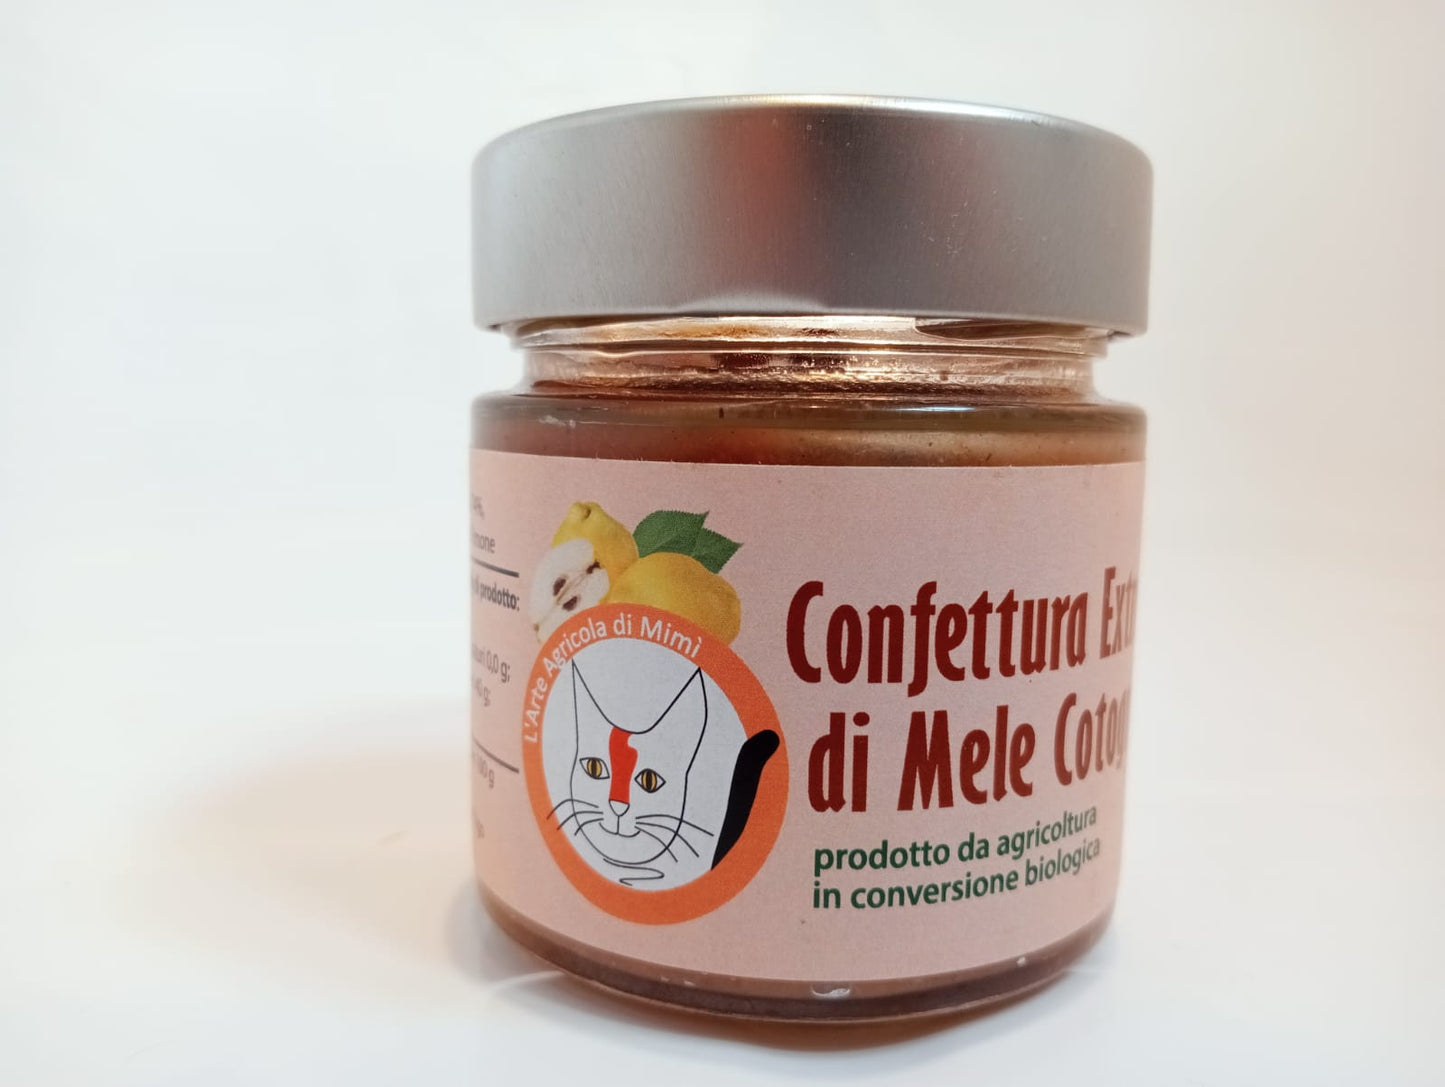 Confettura Extra di Mele Cotogne 74% frutta